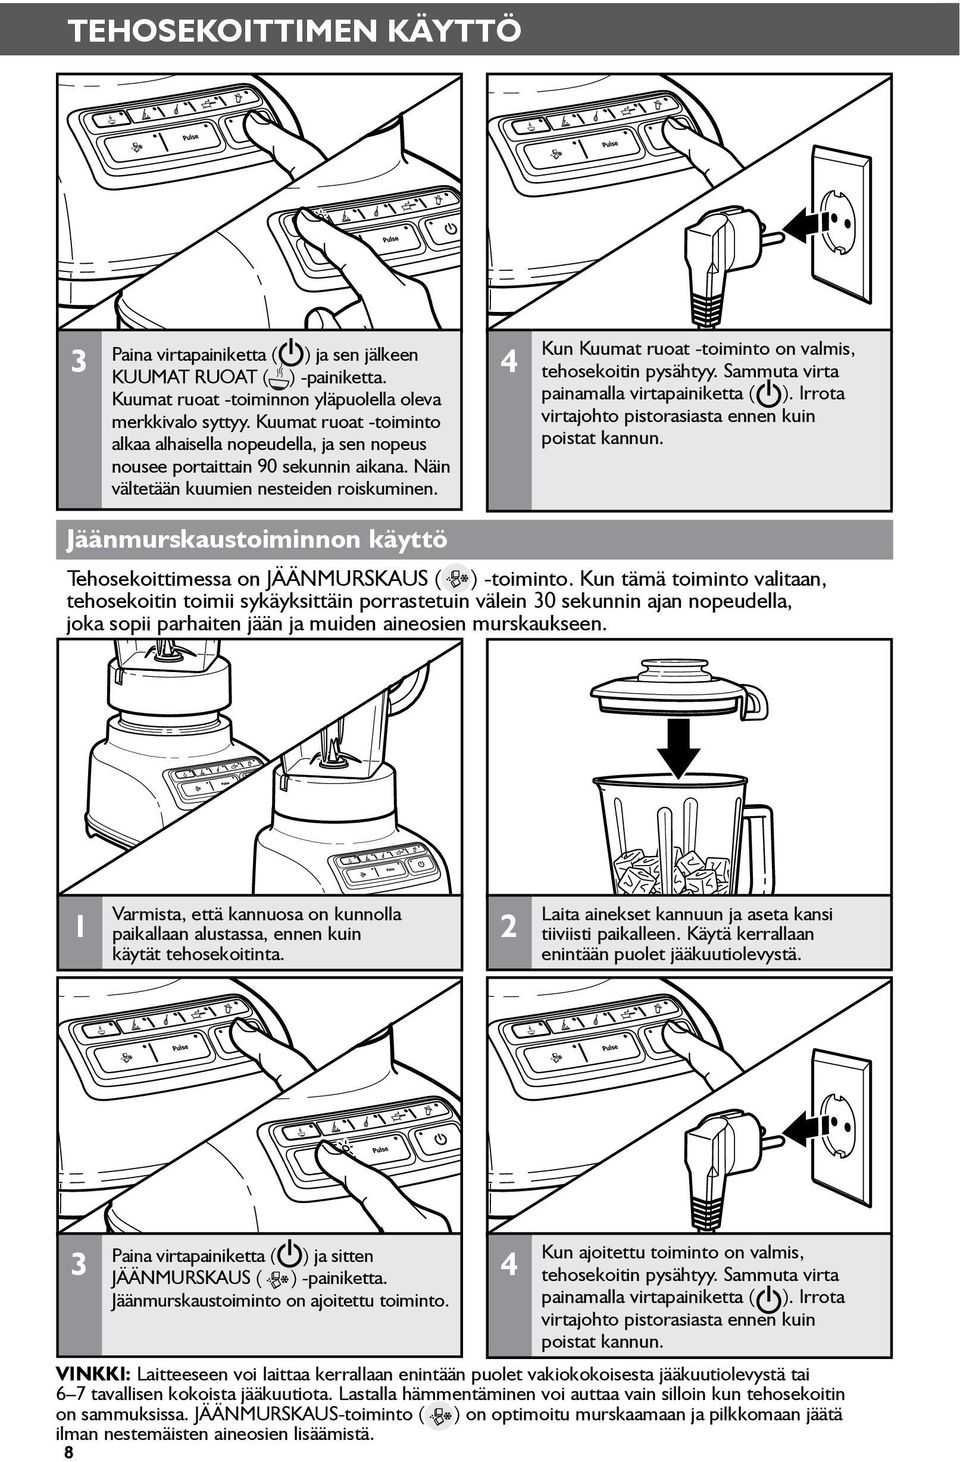 4 Kun Kuumat ruoat -toiminto on valmis, tehosekoitin pysähtyy. Sammuta virta painamalla virtapainiketta ( ). Irrota virtajohto pistorasiasta ennen kuin poistat kannun.